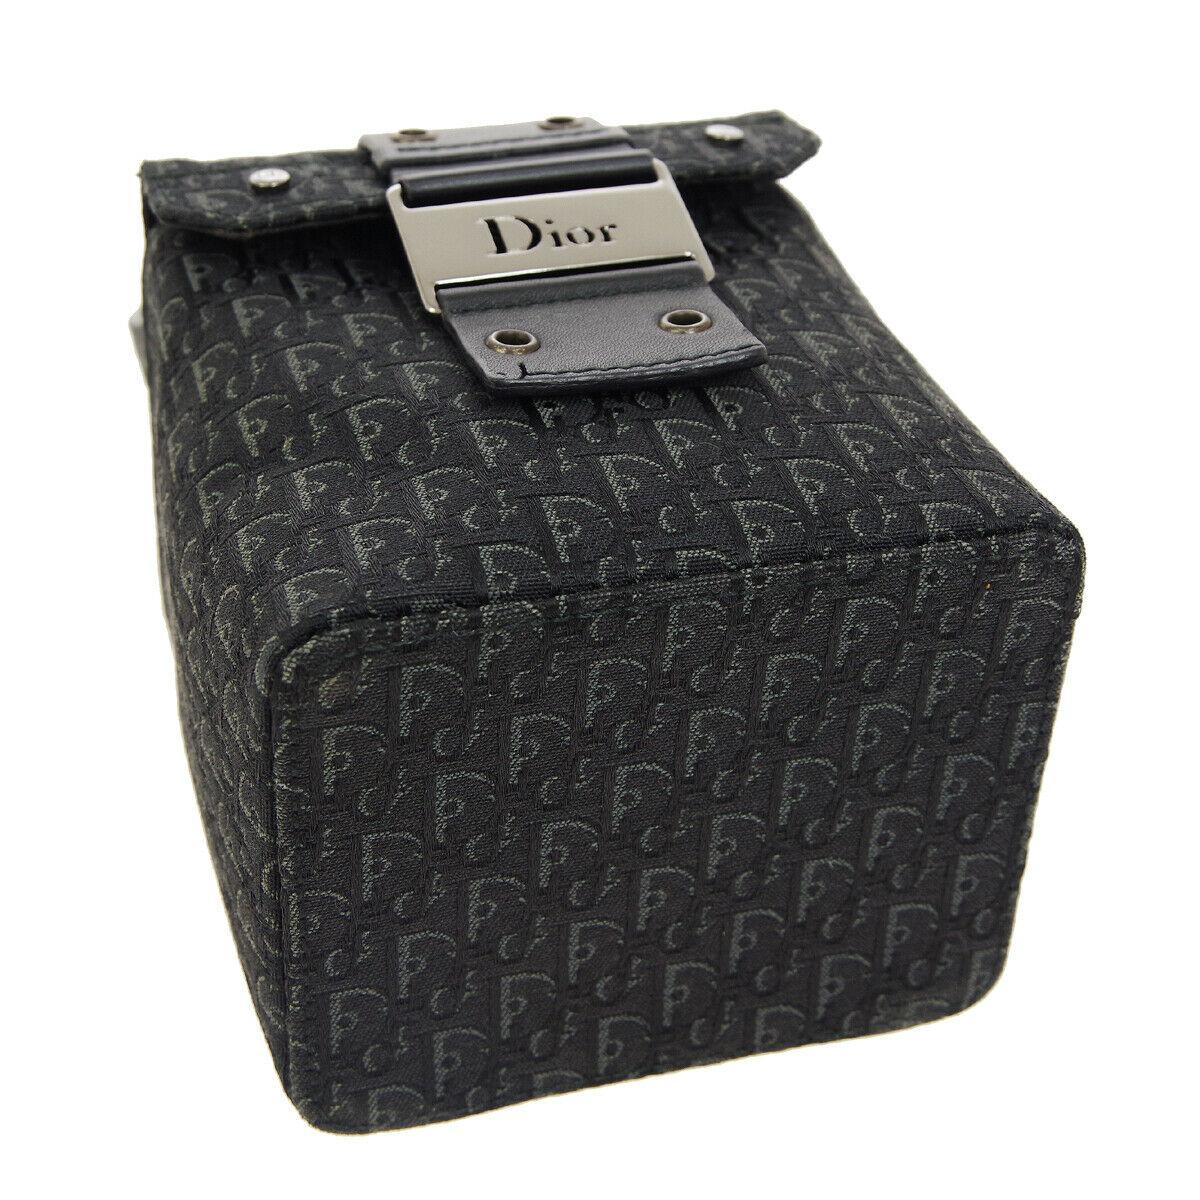 dior black box